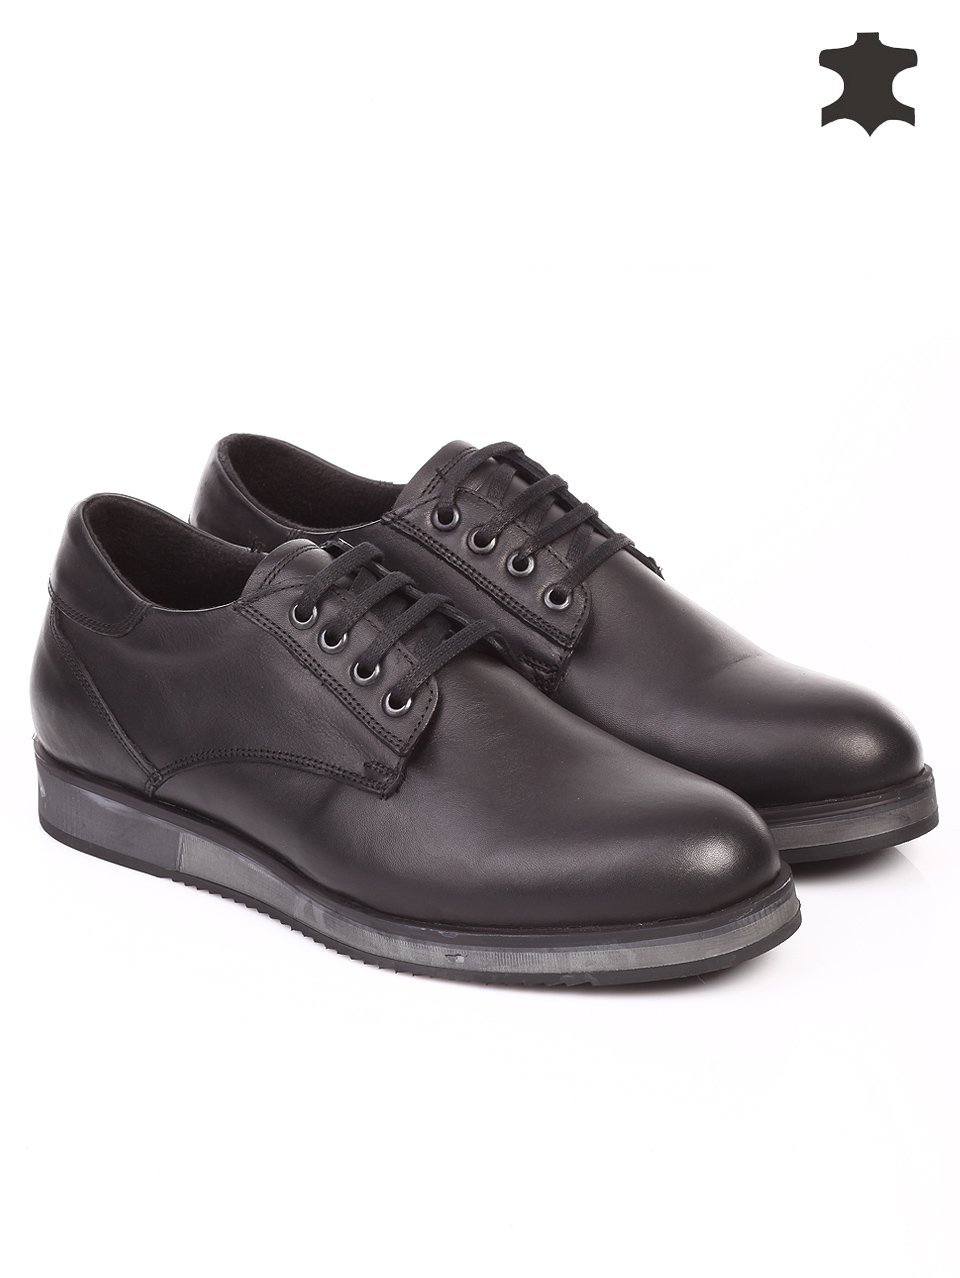 Ежедневни мъжки обувки от естествена кожа в черно 7AT-15823 black